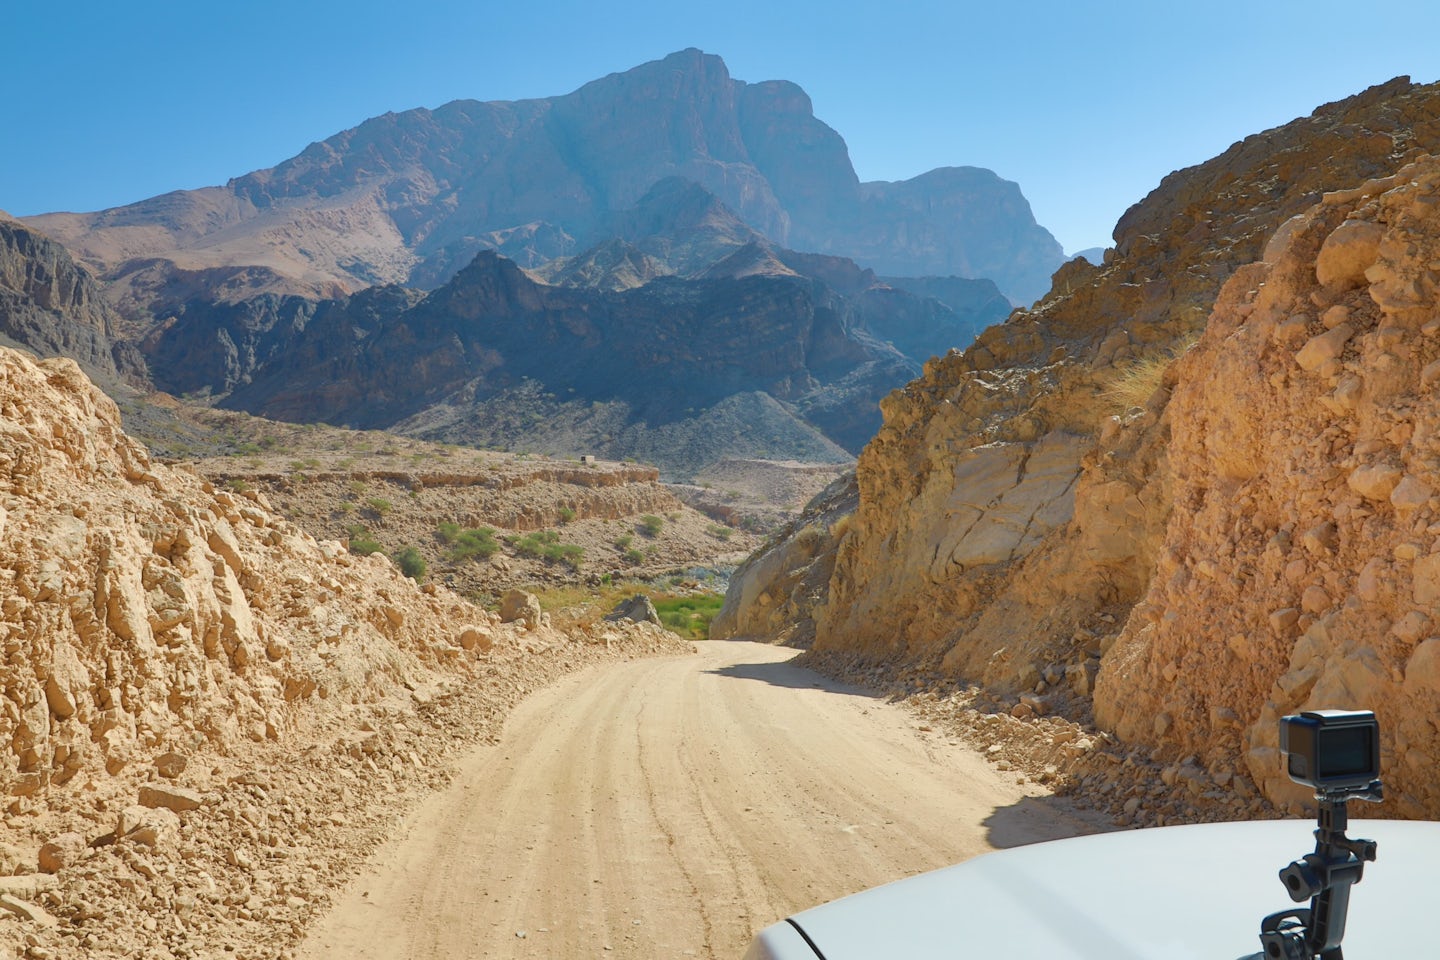 Outstanding scenery, Wadi Arbaeen, Oman